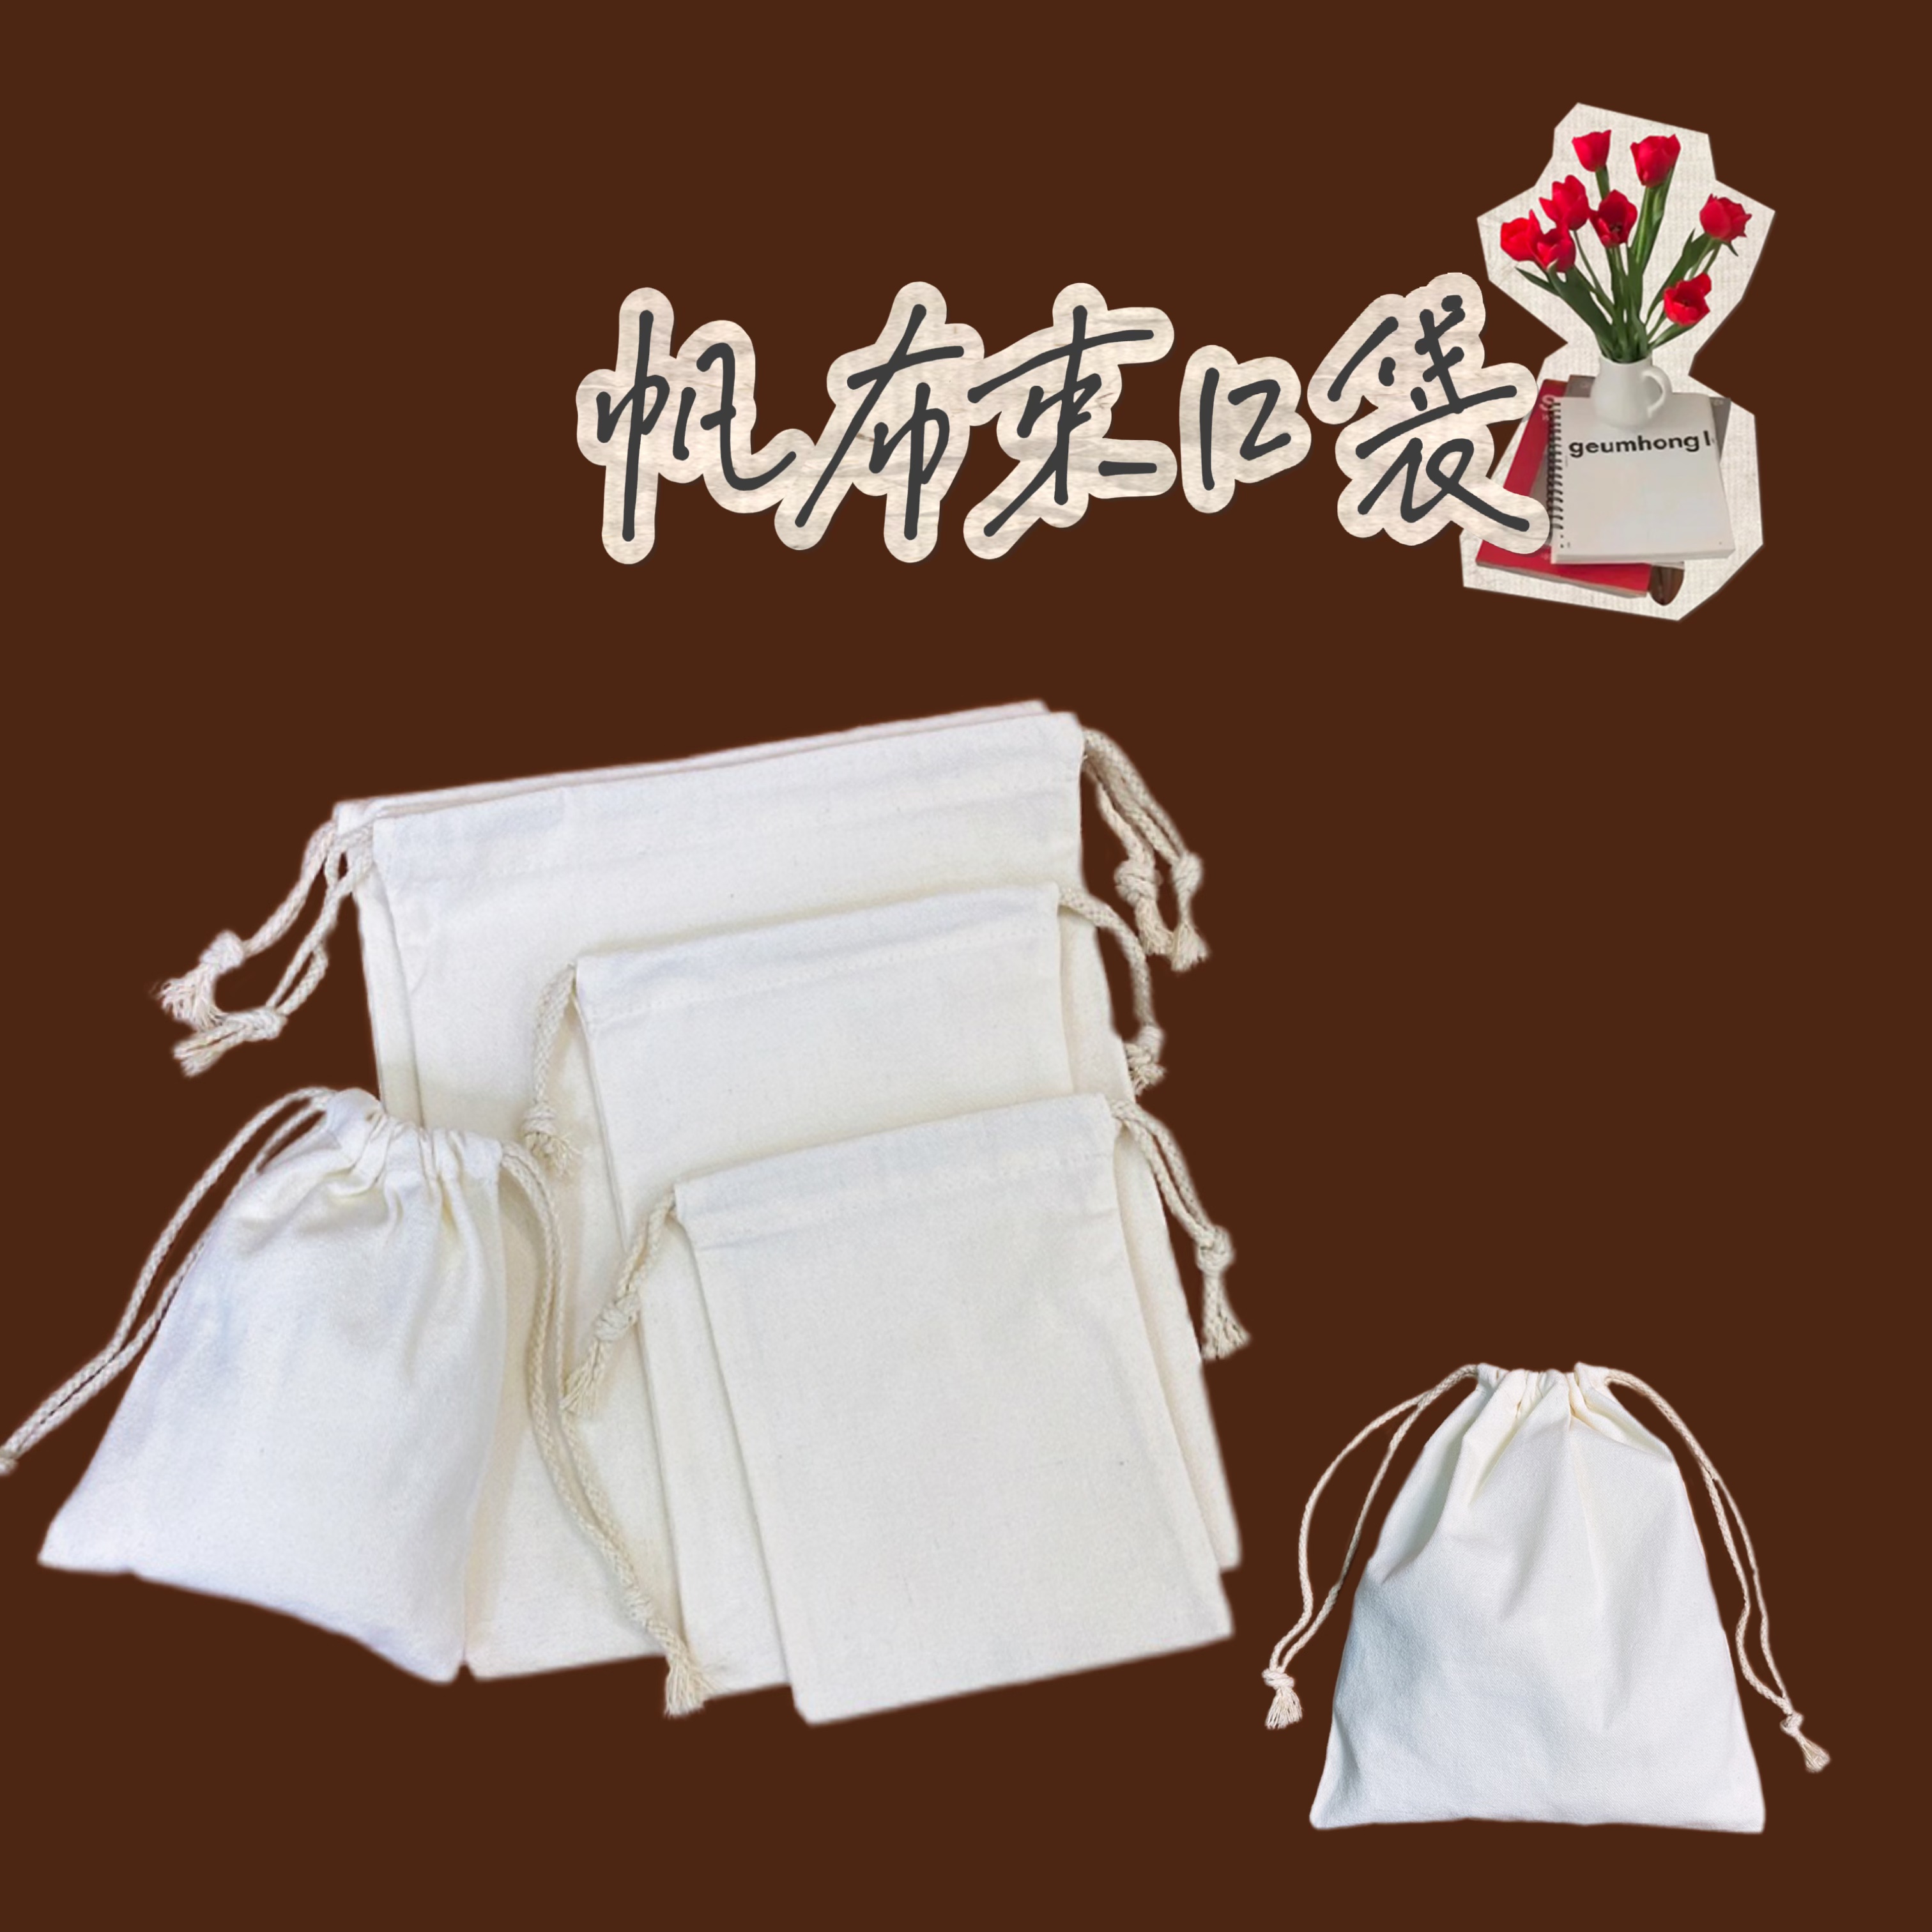 空白帆布卡通化妝包 自製diy手作收納袋 棉質束口袋